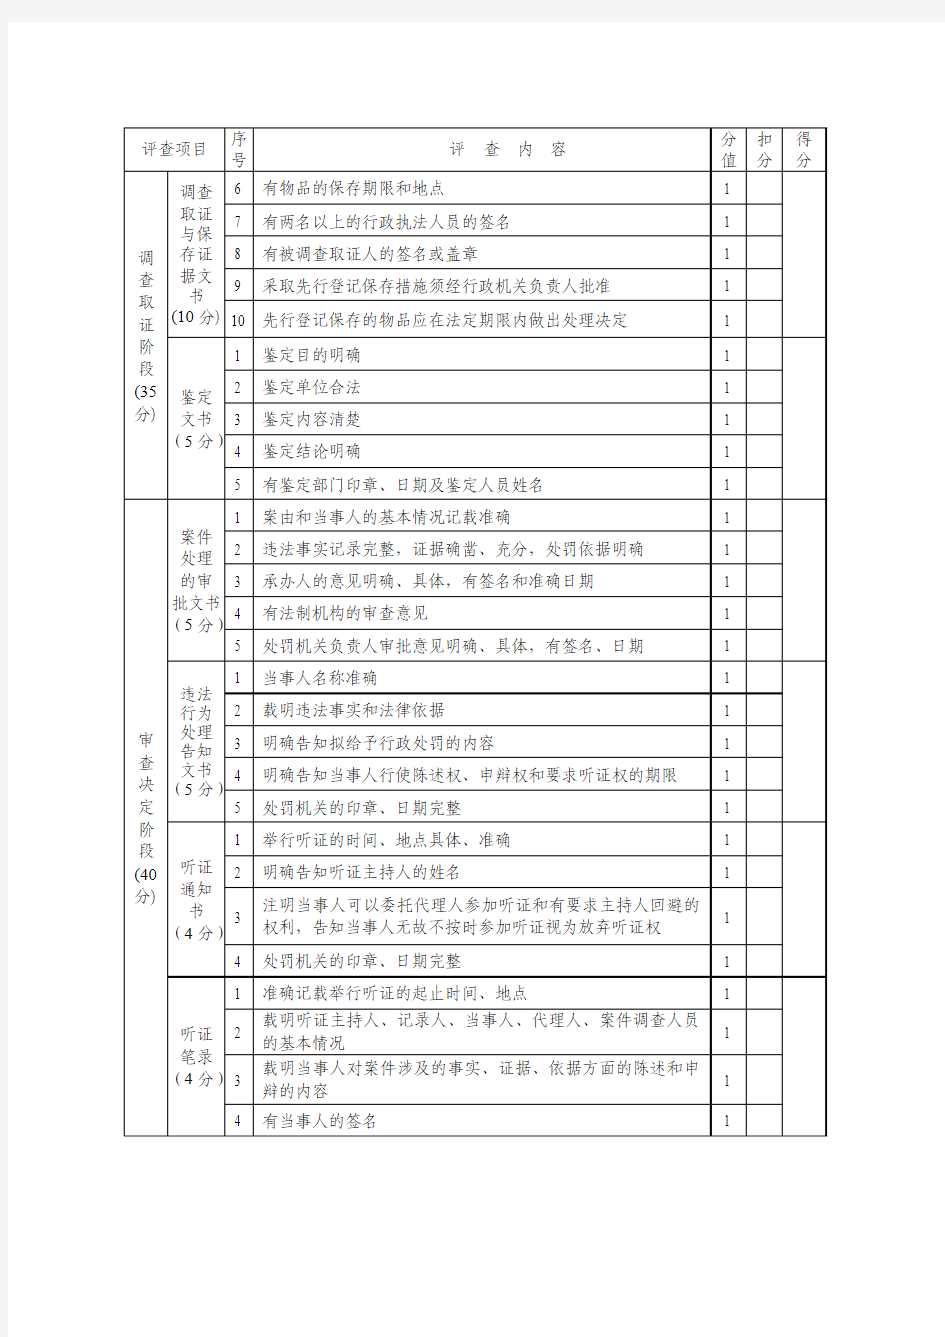 一般程序行政处罚案卷文书评查标准(记分表)